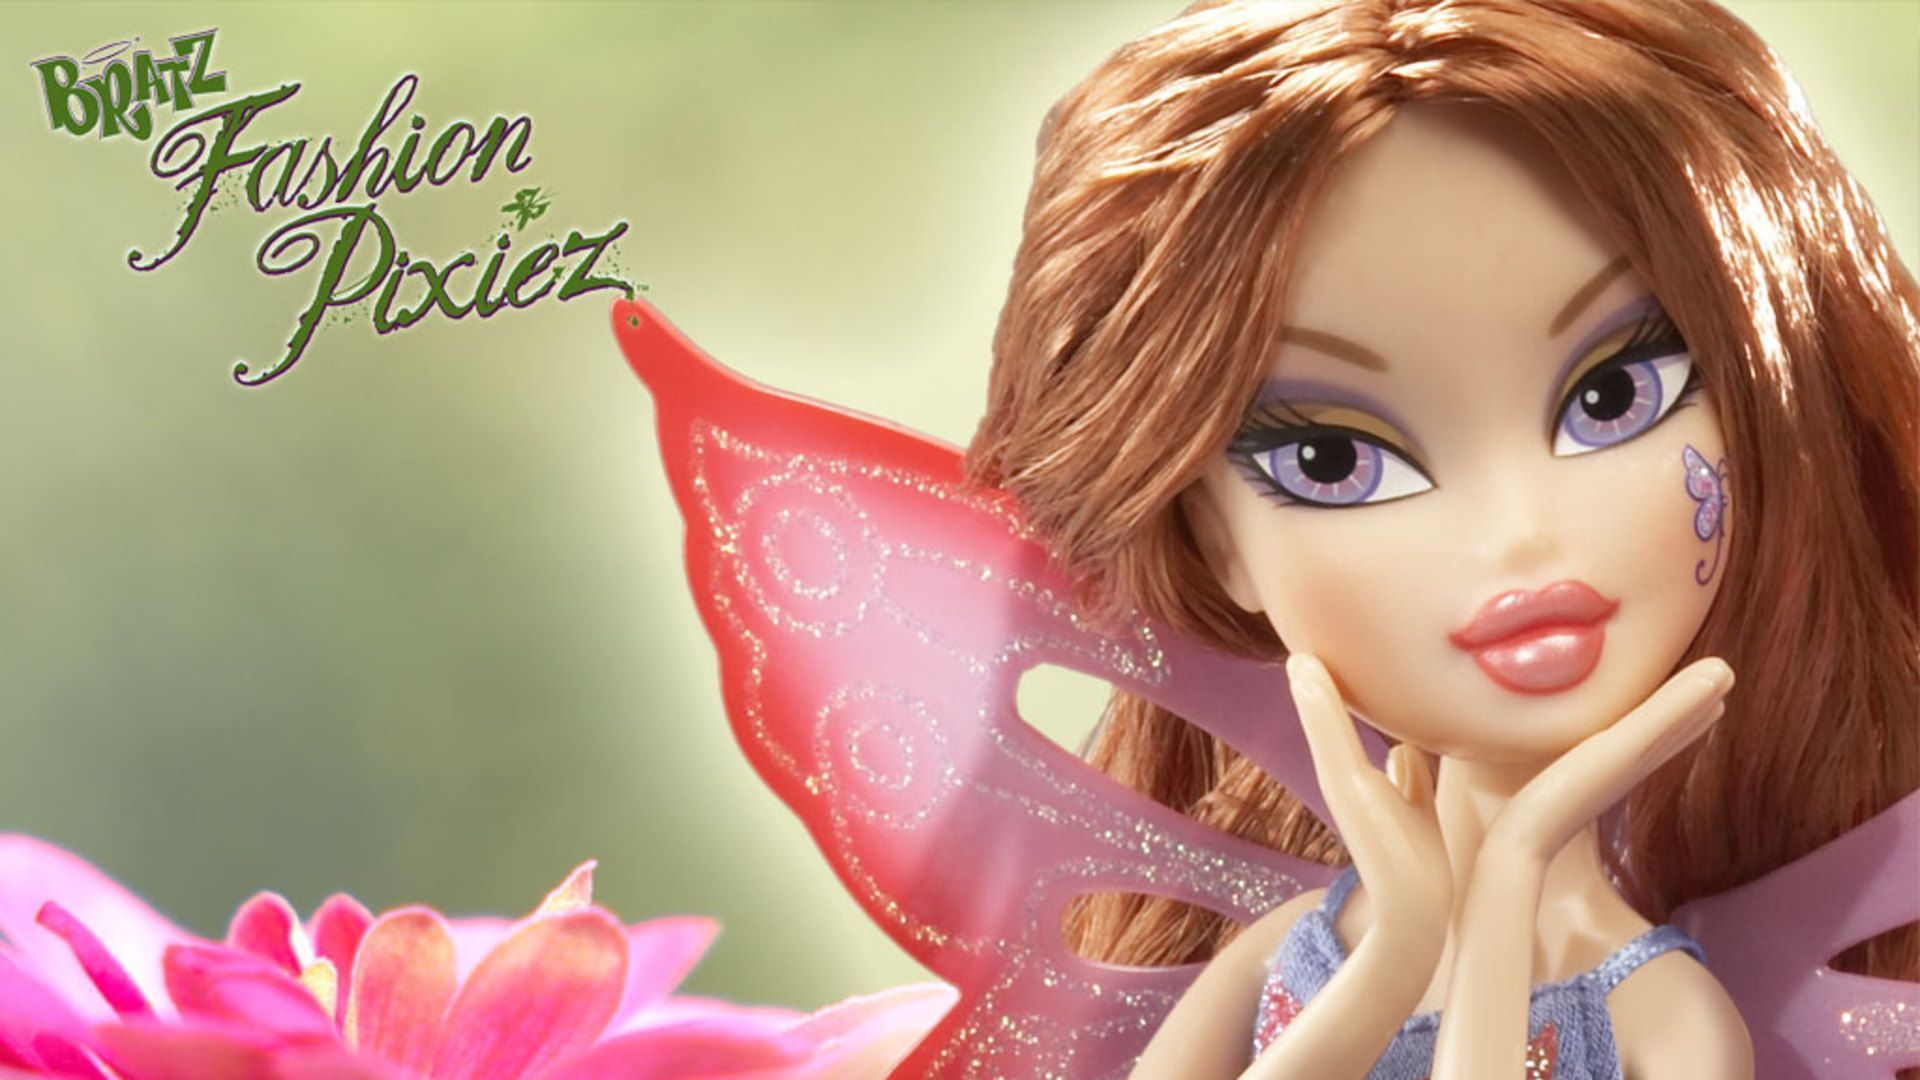 Bratz Fashion Pixiez Dolls - 100% original and in perfect condition. - Bratz